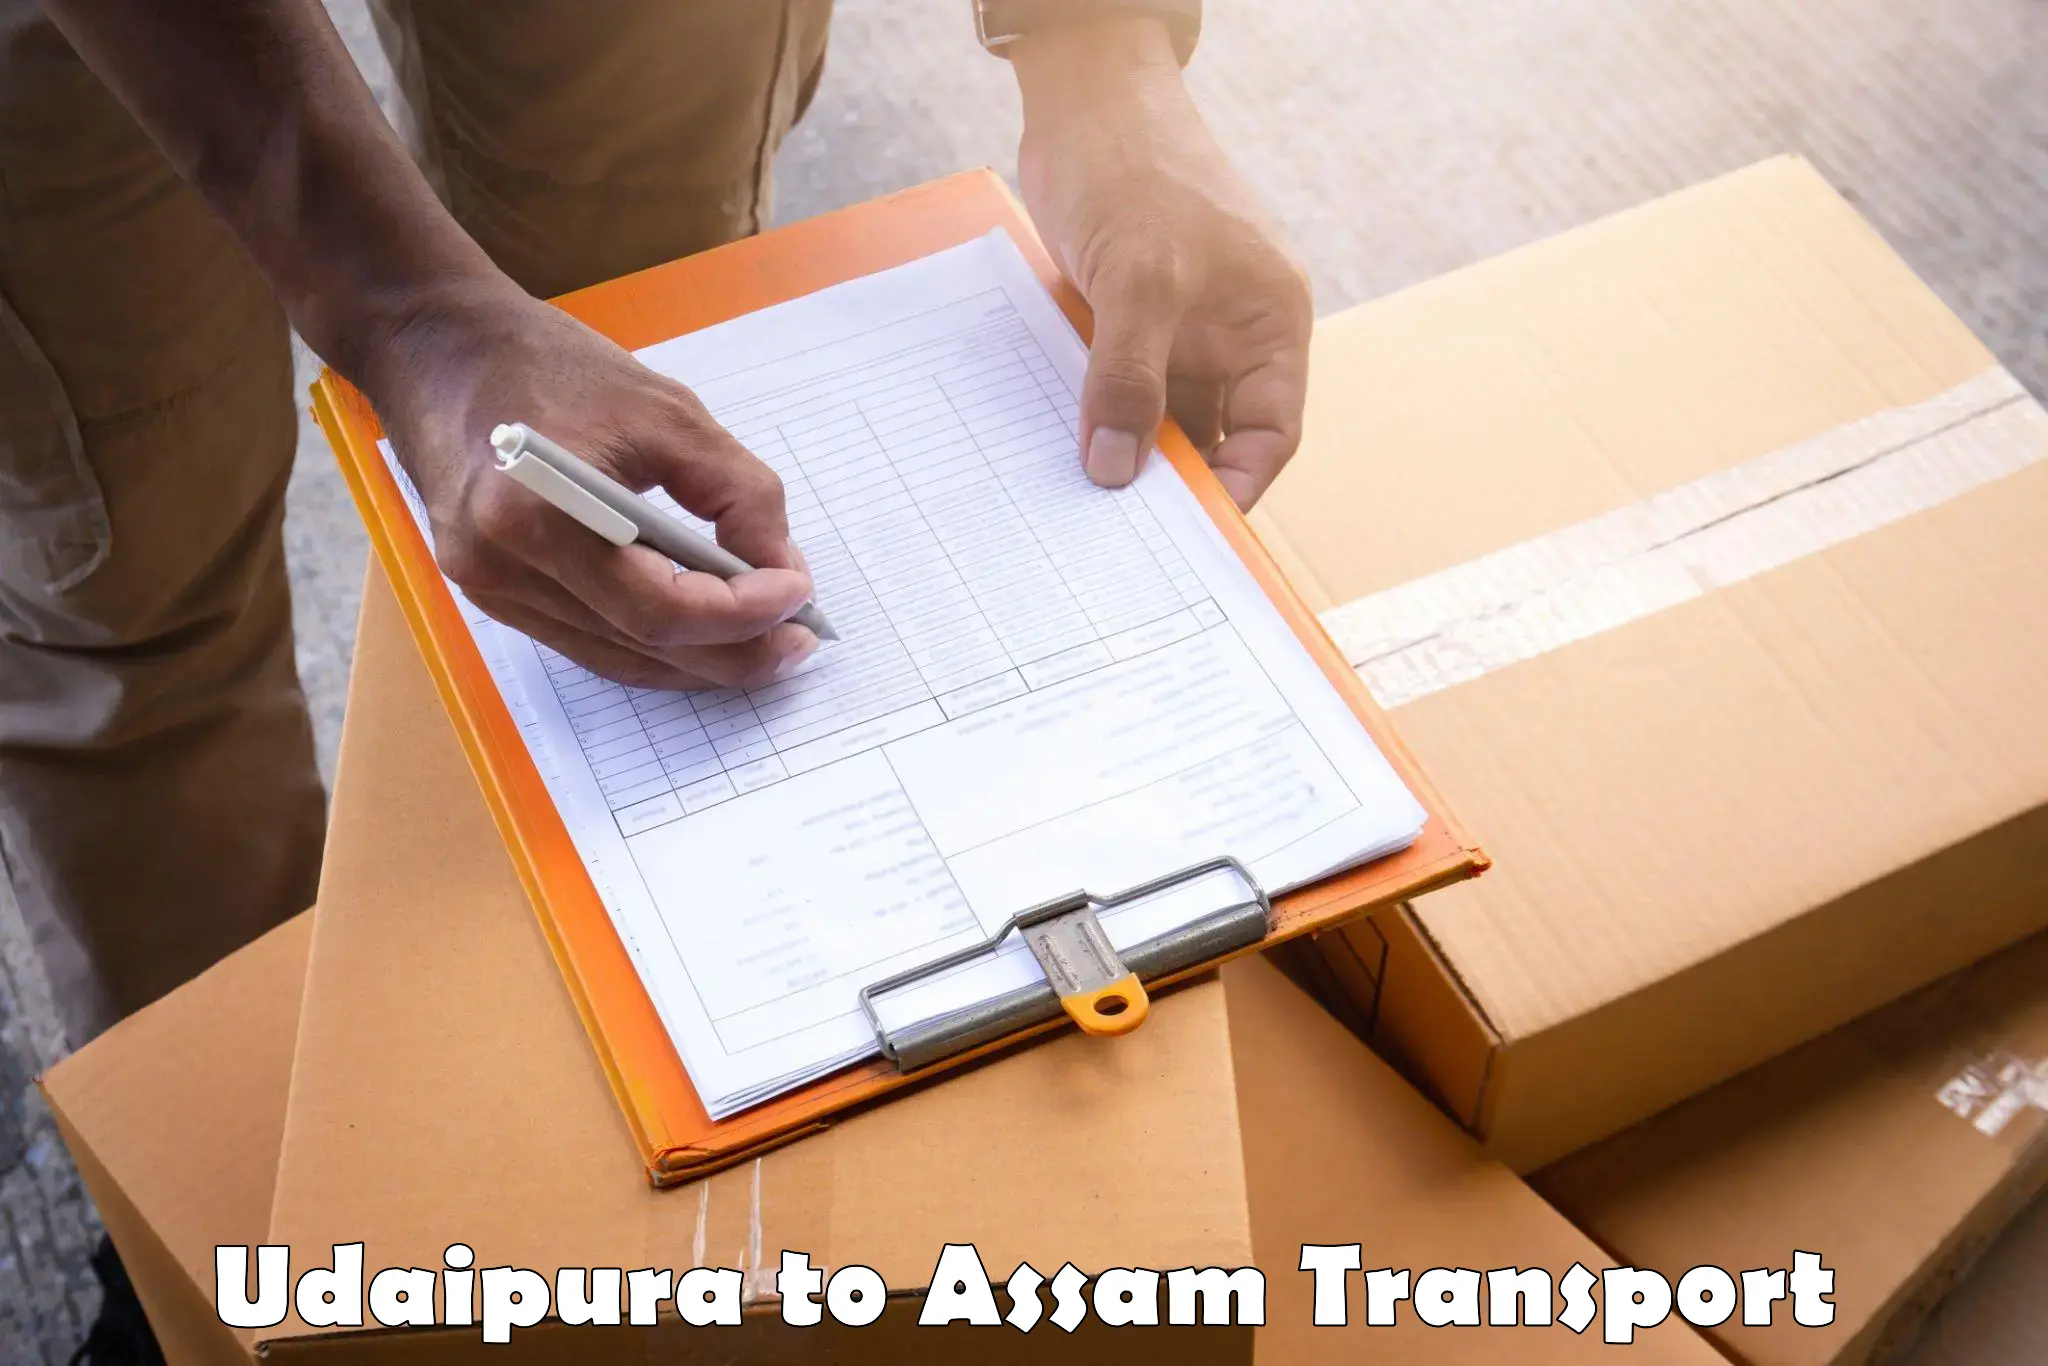 Furniture transport service Udaipura to Balapara